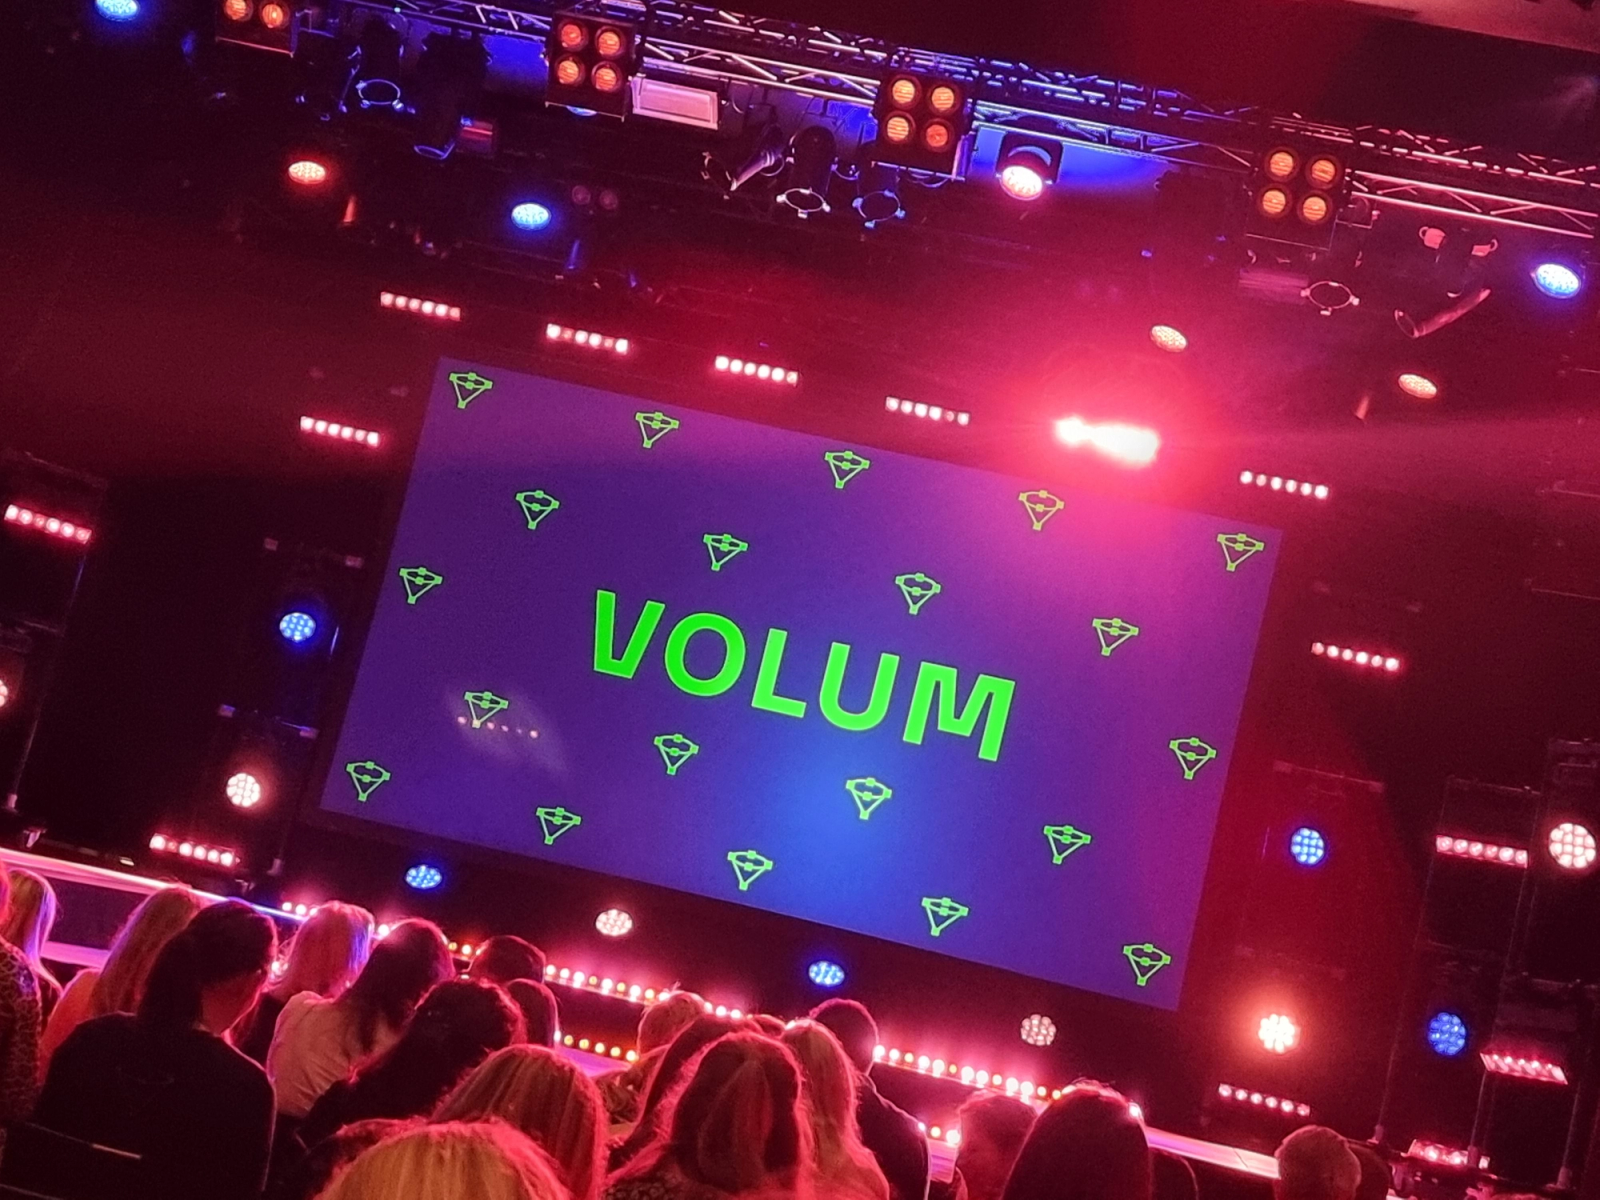 Opplyst scene med logoen til Volumkonferansen foran et publikum. Foto